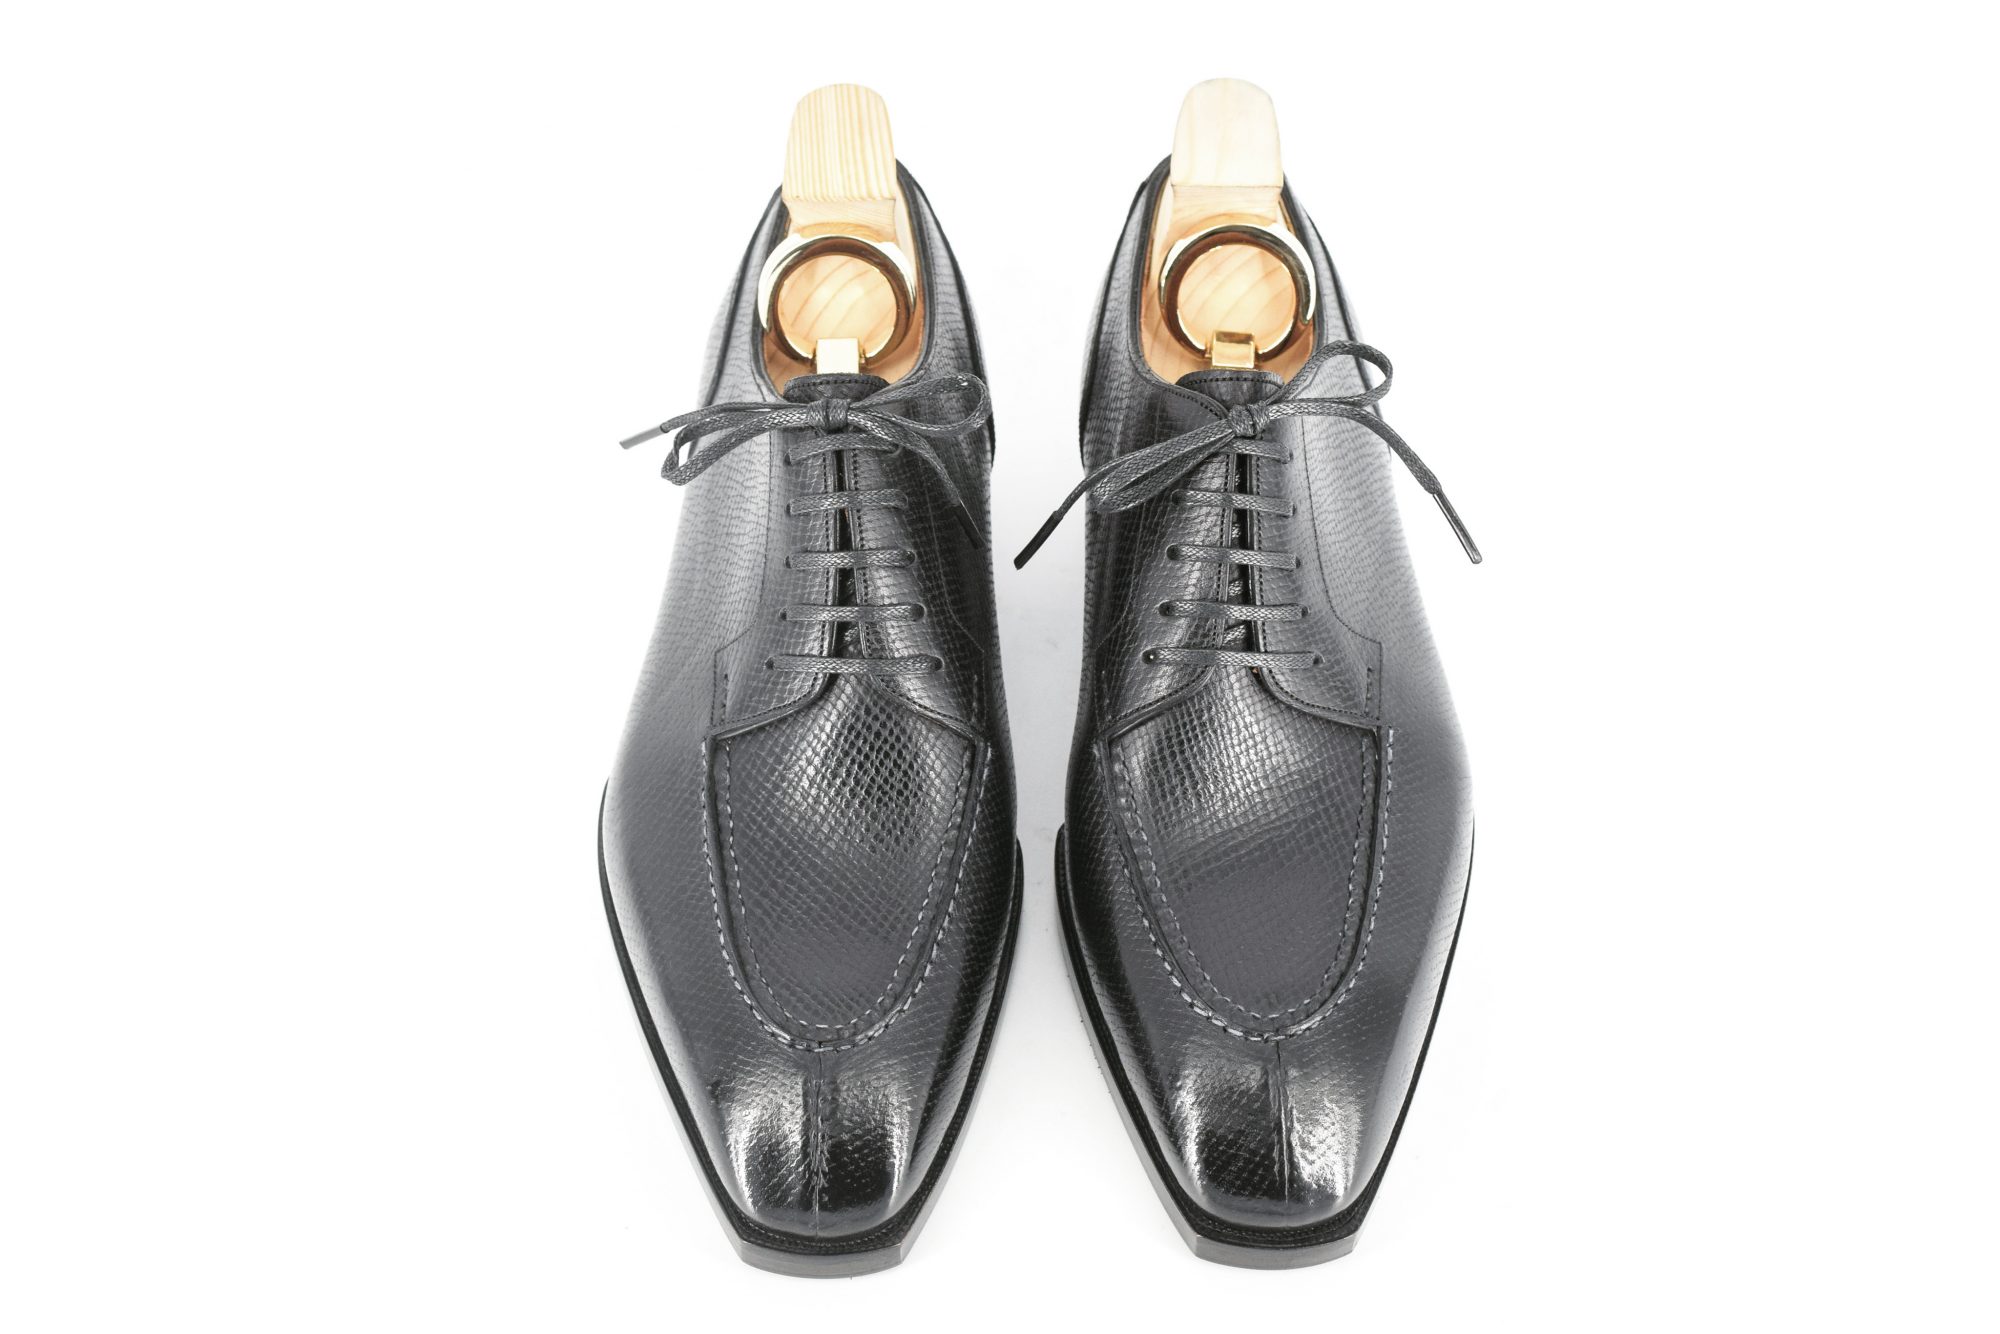 MTO Derby Split Toe Shoes - Hatchgrain Leather